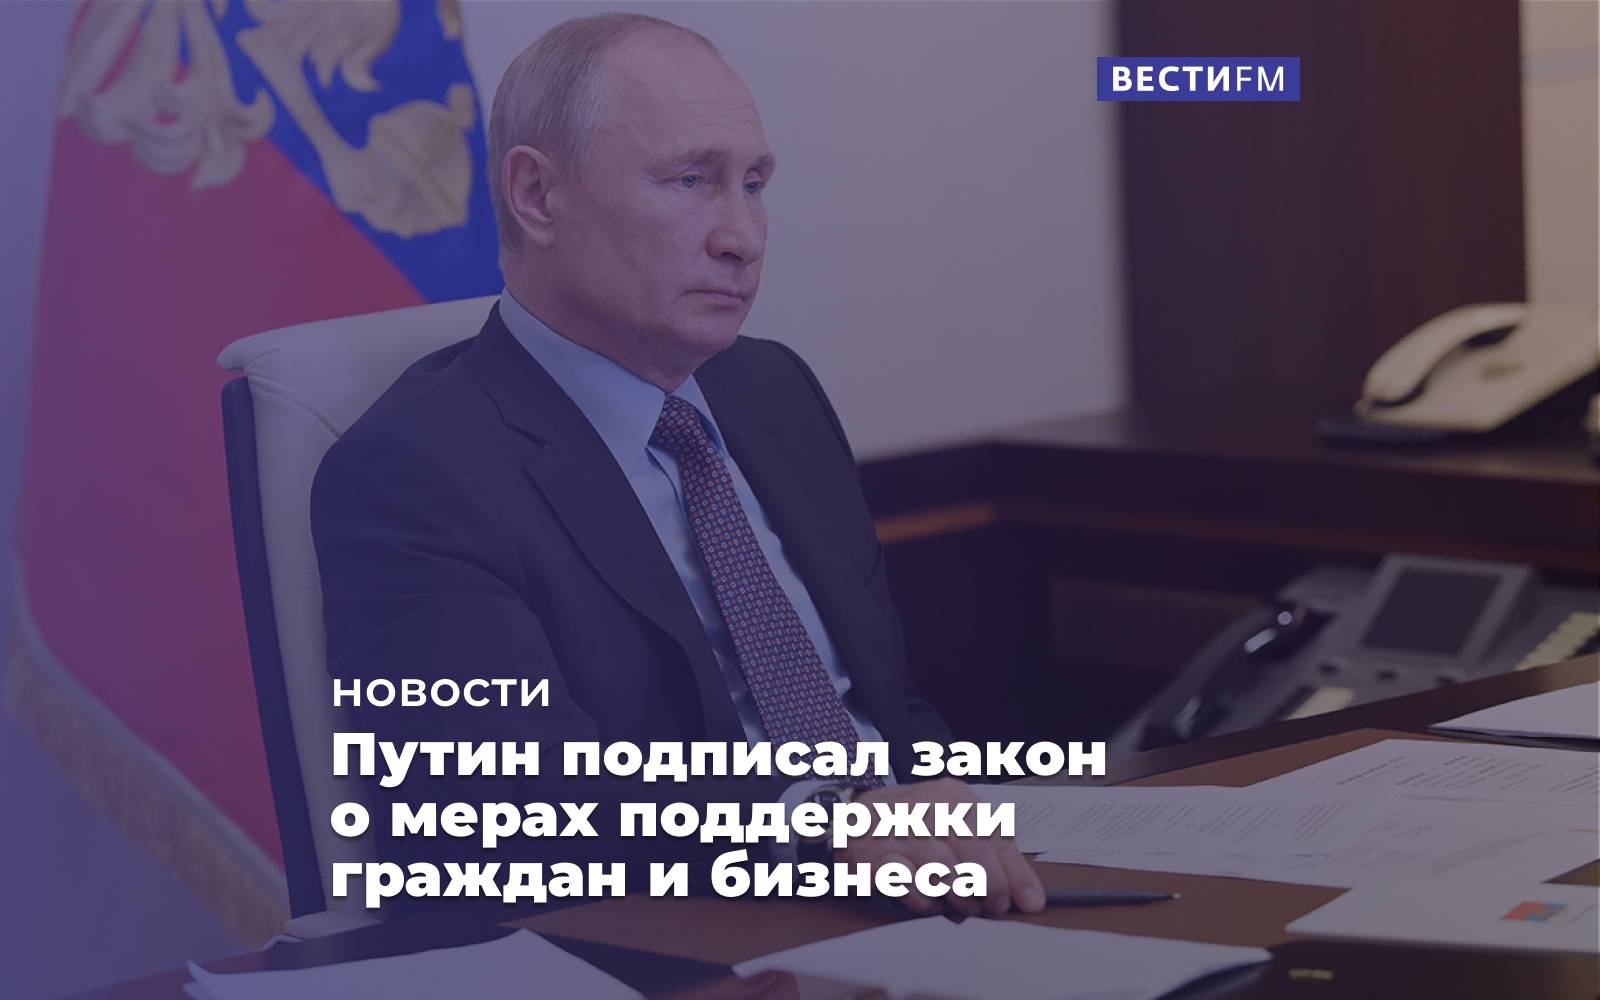 Владимир путин подписал пакет законов о мерах поддержки, которые касаются миллионов россиян ► последние новости